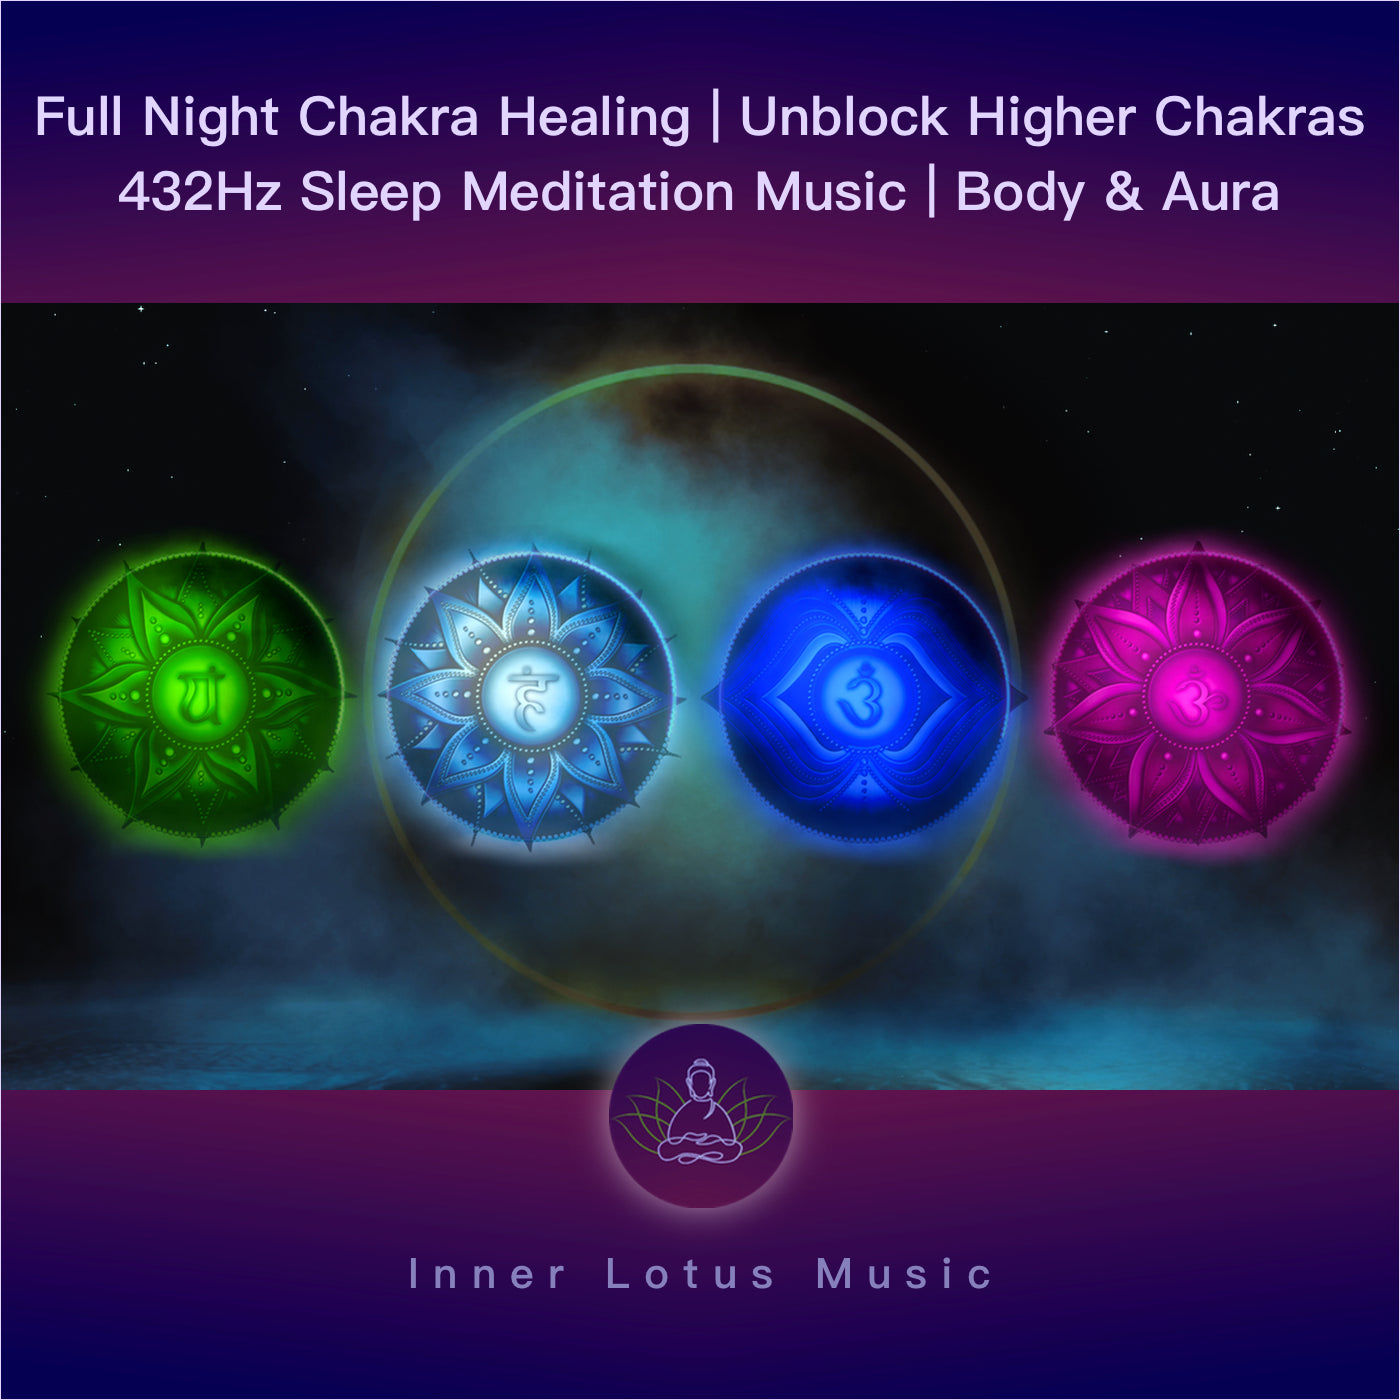 Desbloquea Tus Chakras Superiores | Apertura y Sanación | Música Curativa 432 Hz Meditación y Sueño